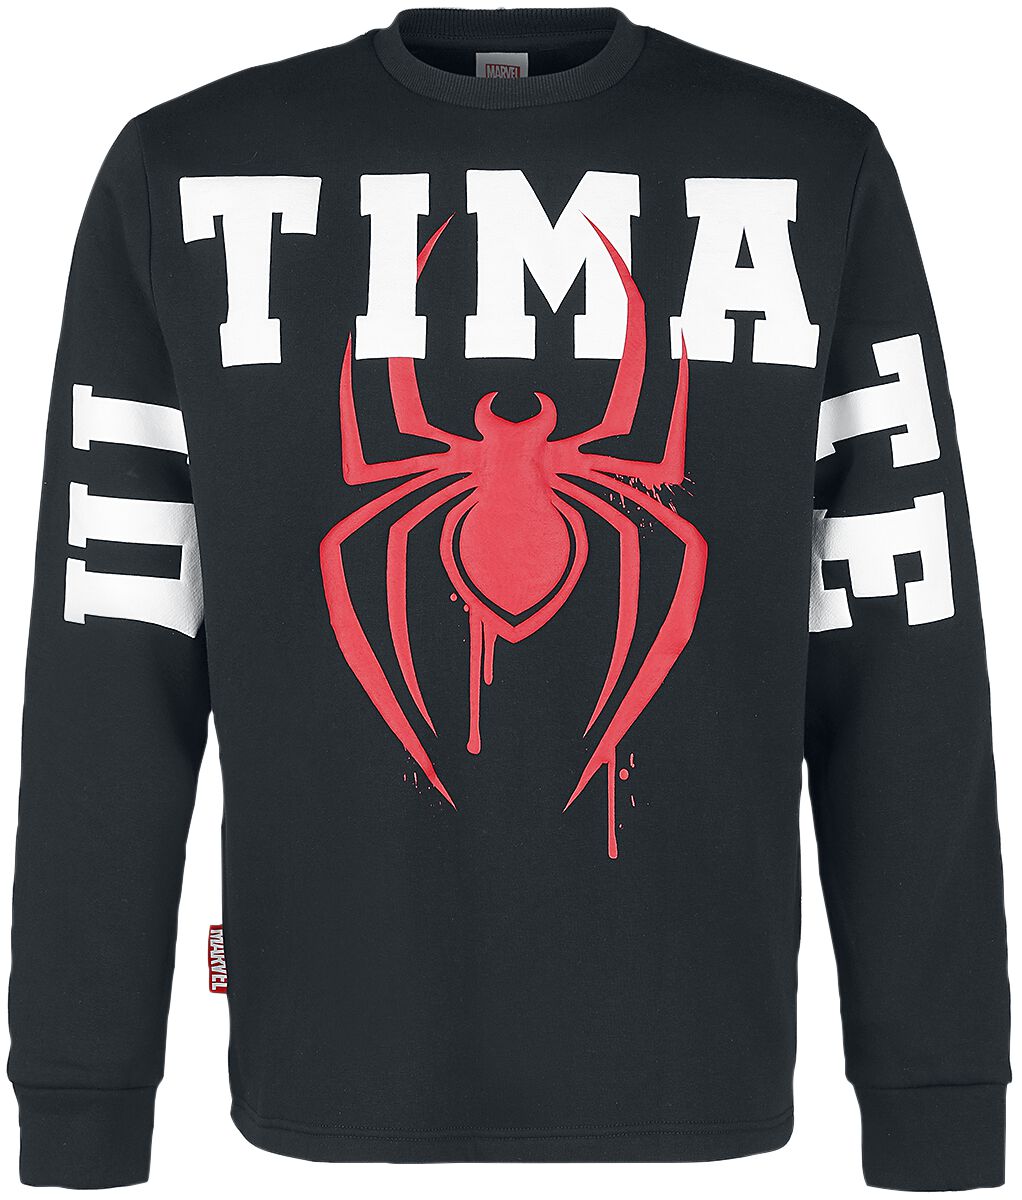 Spider-Man Ultimate Logo Sweatshirt schwarz in L